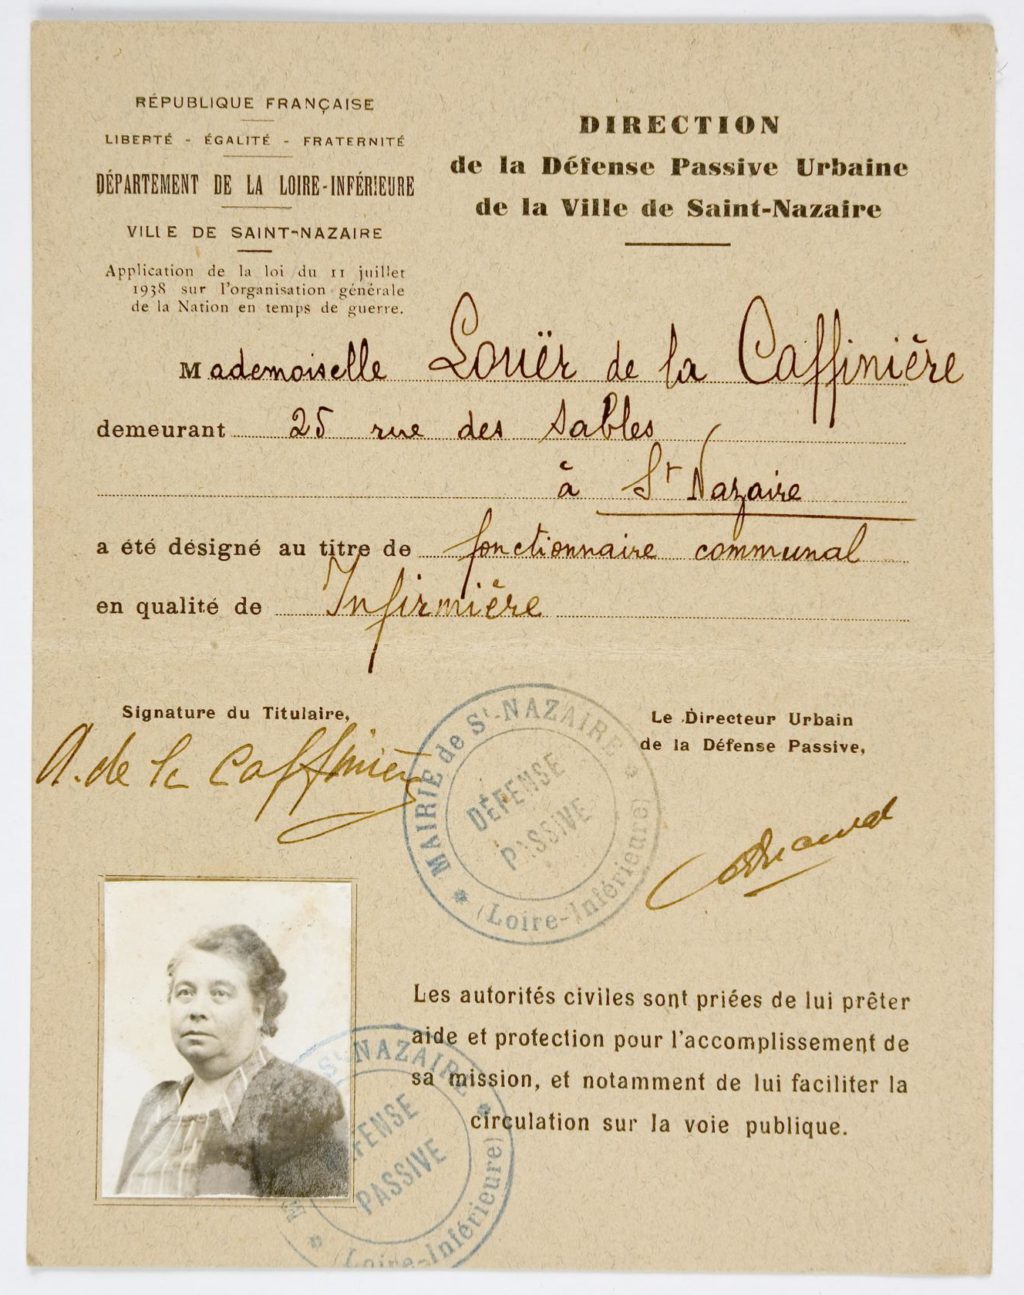 Photographie d'une carte de service de la défense passive qui renseigne l'identité de sa propriétaire, Mademoiselle Laouër de la Caffinière, infirmière communale avec sa photo d'identité.